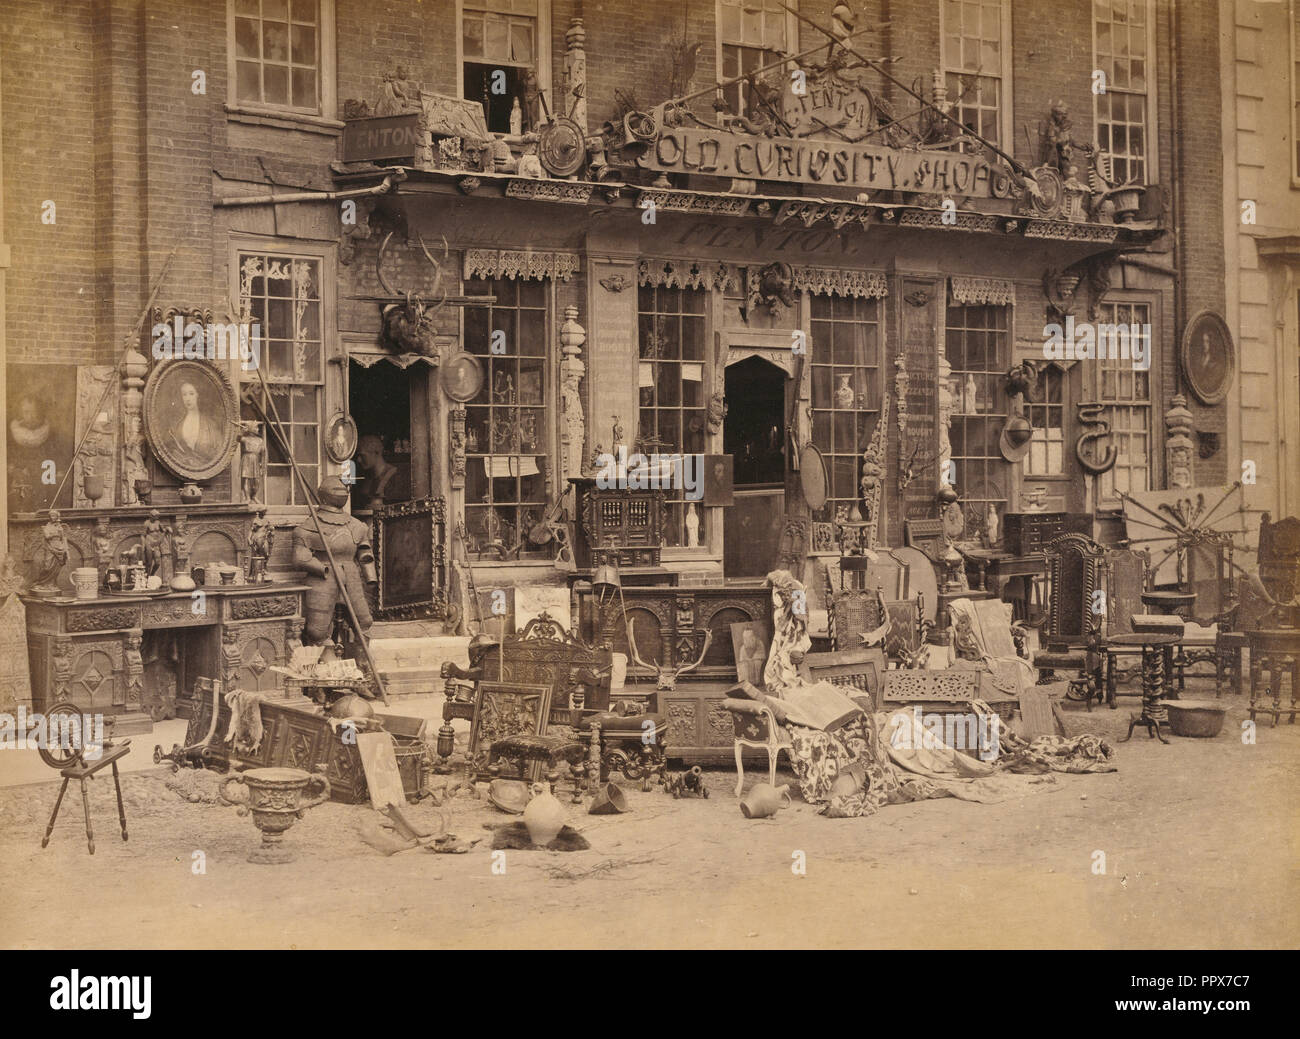 Old Curiosity Shop - Bury St. Edmunds; John Dixon Piper, Scottish, active 1850s - 1860s, Bury St. Edmunds, England; about 1860 Stock Photo